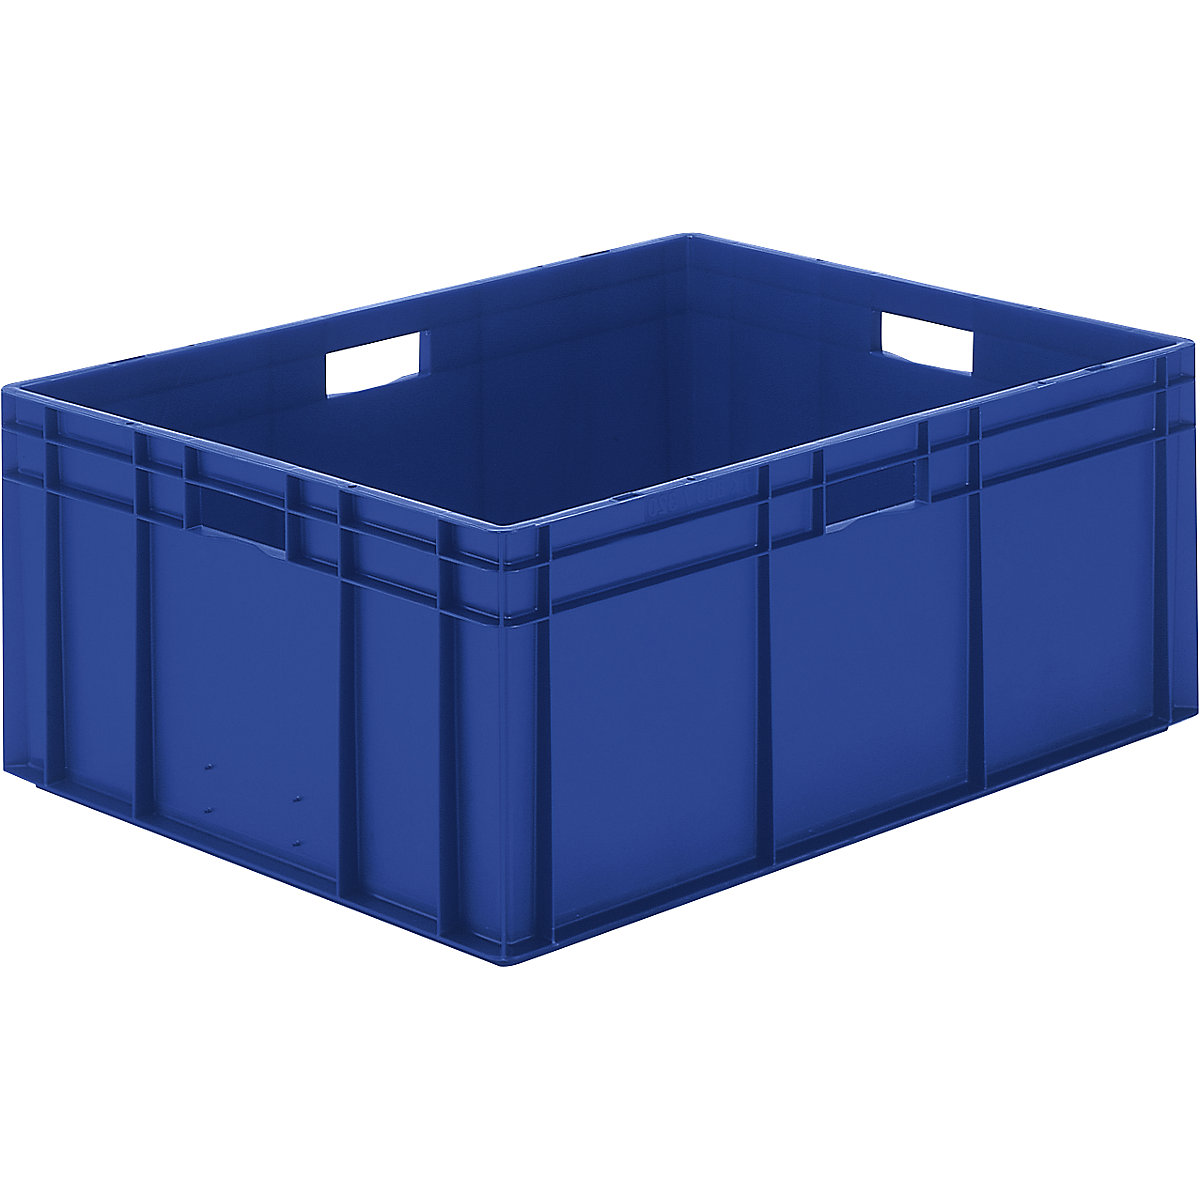 Euro-Format-Stapelbehälter, Wände und Boden geschlossen, LxBxH 800 x 600 x 320 mm, blau, VE 2 Stk-5